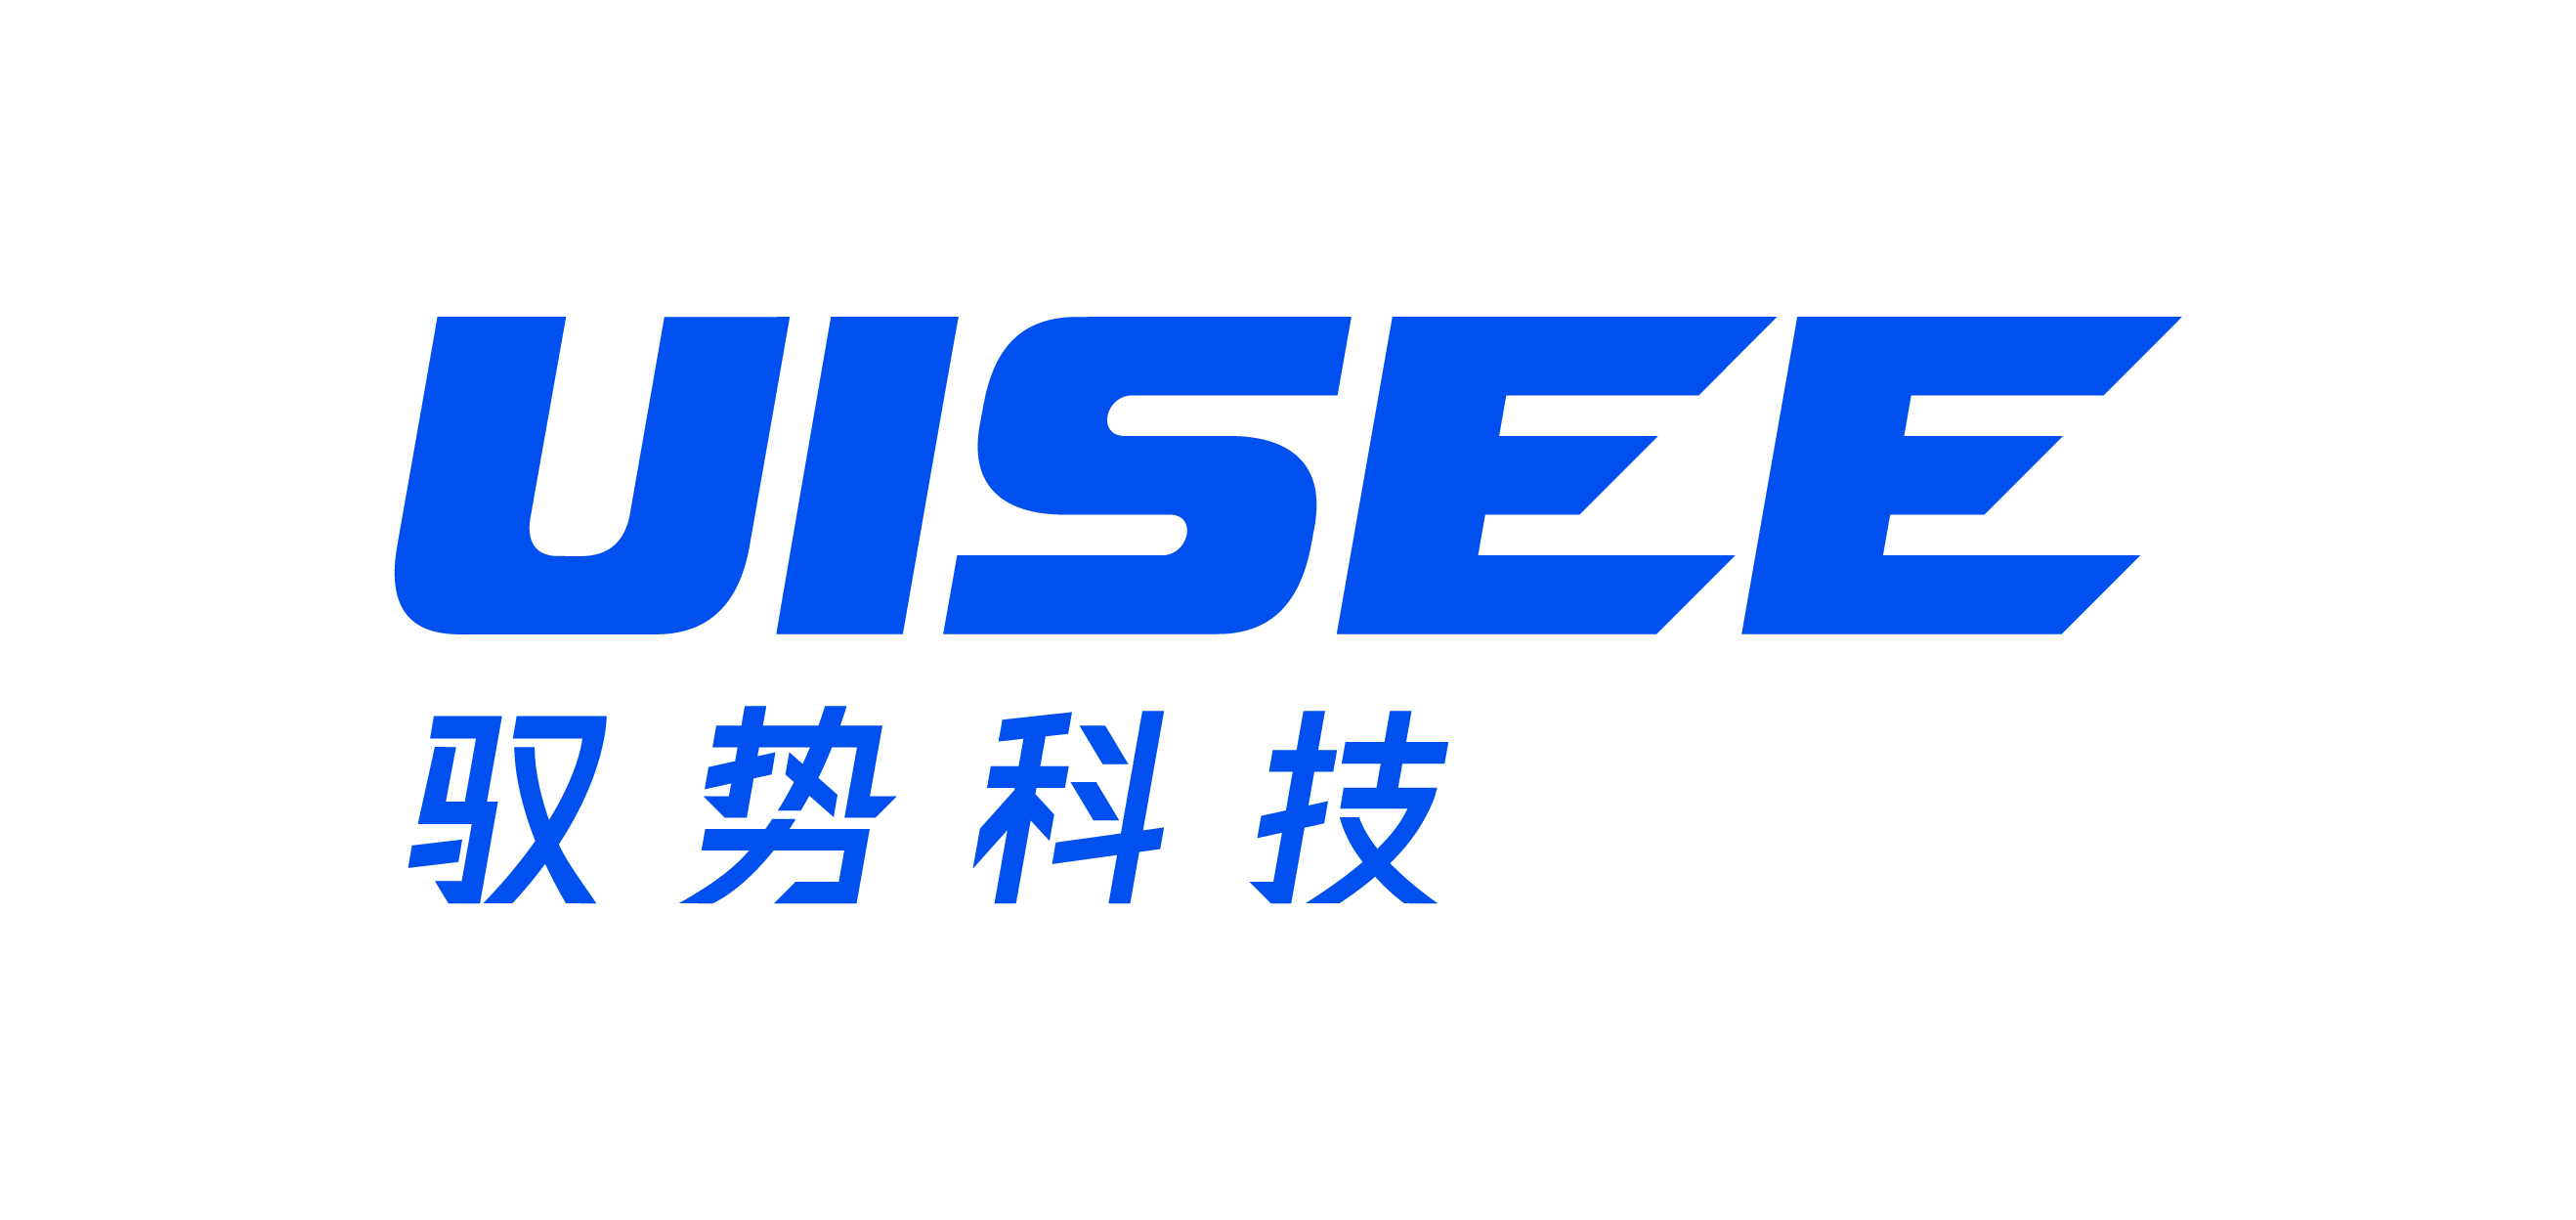 驭势科技 UISEE 是中国领先的自动驾驶公司，致力于为全行业、全场景提供 AI 驾驶服务，交付赋能出行和物流新生态的 AI 驾驶员。